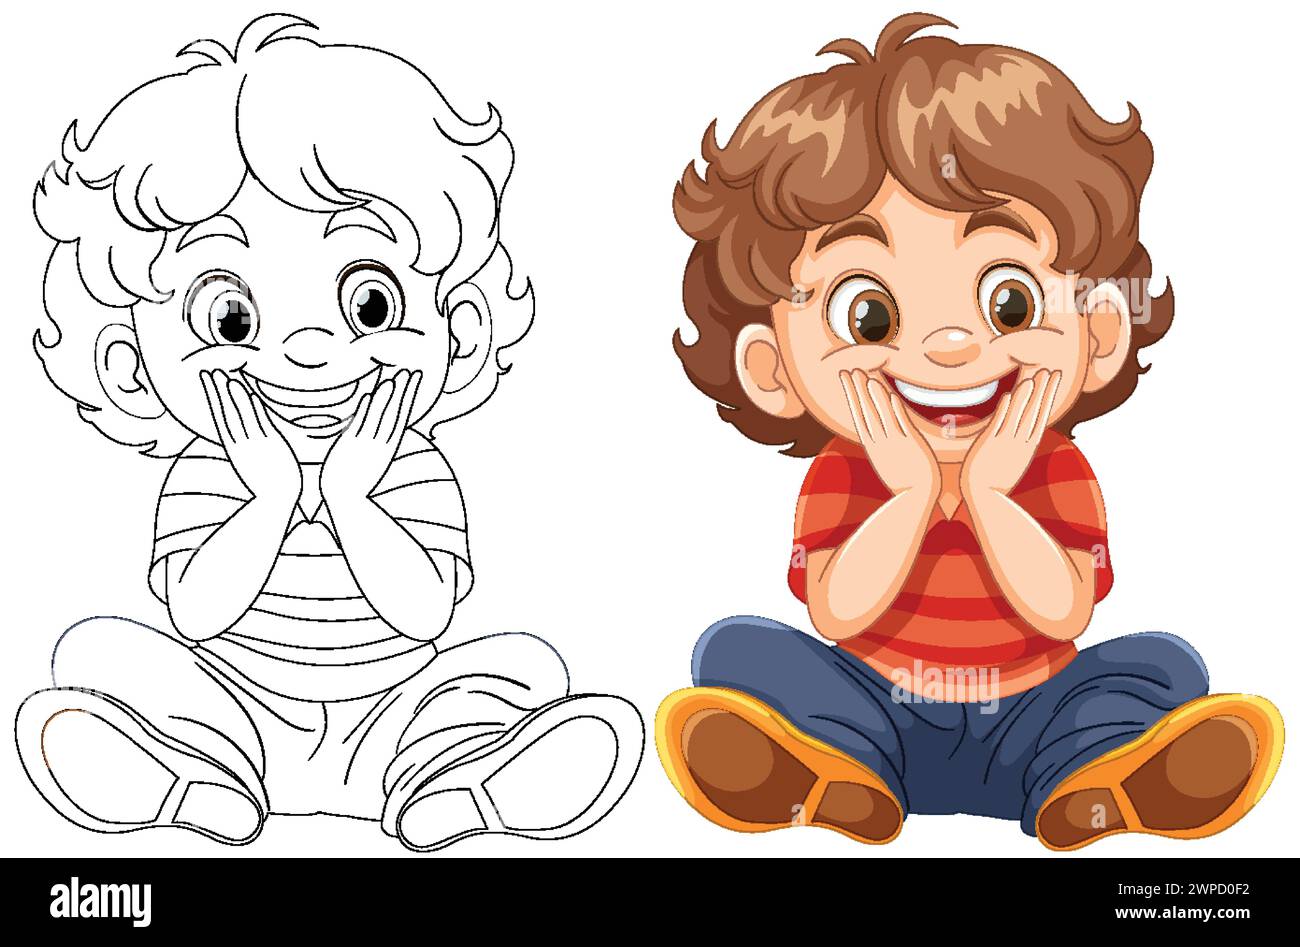 Farbenfrohe Strichkunst-Illustrationen eines glücklichen Jungen im Sitzen Stock Vektor